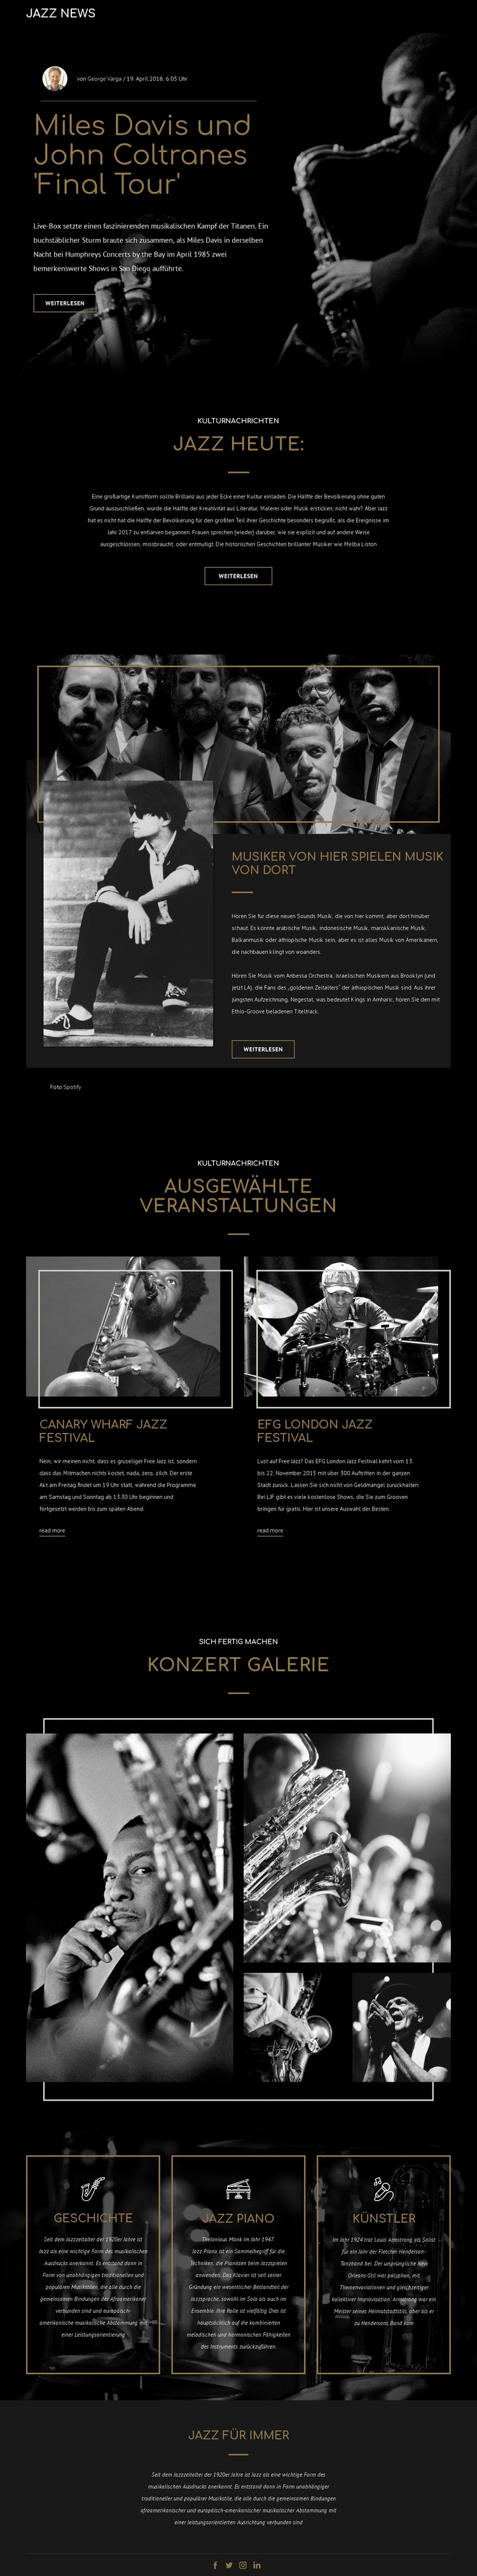 Legengs der Jazzmusik WordPress-Theme